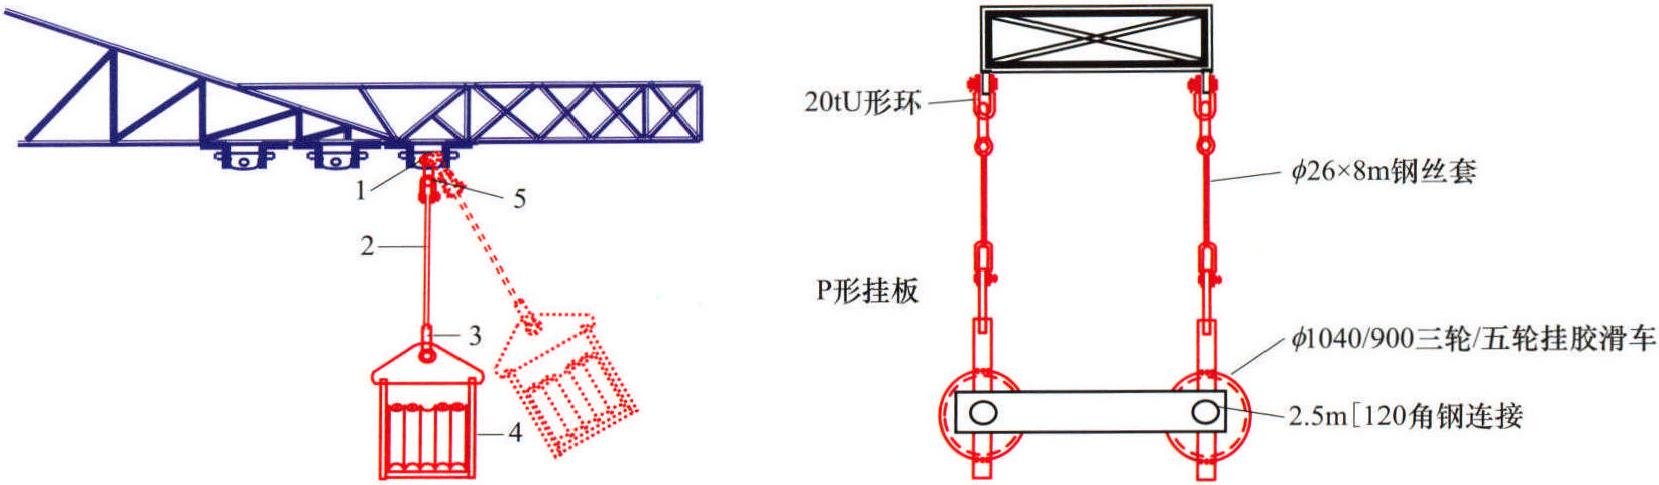 输电线路1035mm<sup>2</sup>大截面Z型导线张力架线典型施工方法 GWGF009-2014-SD-XL